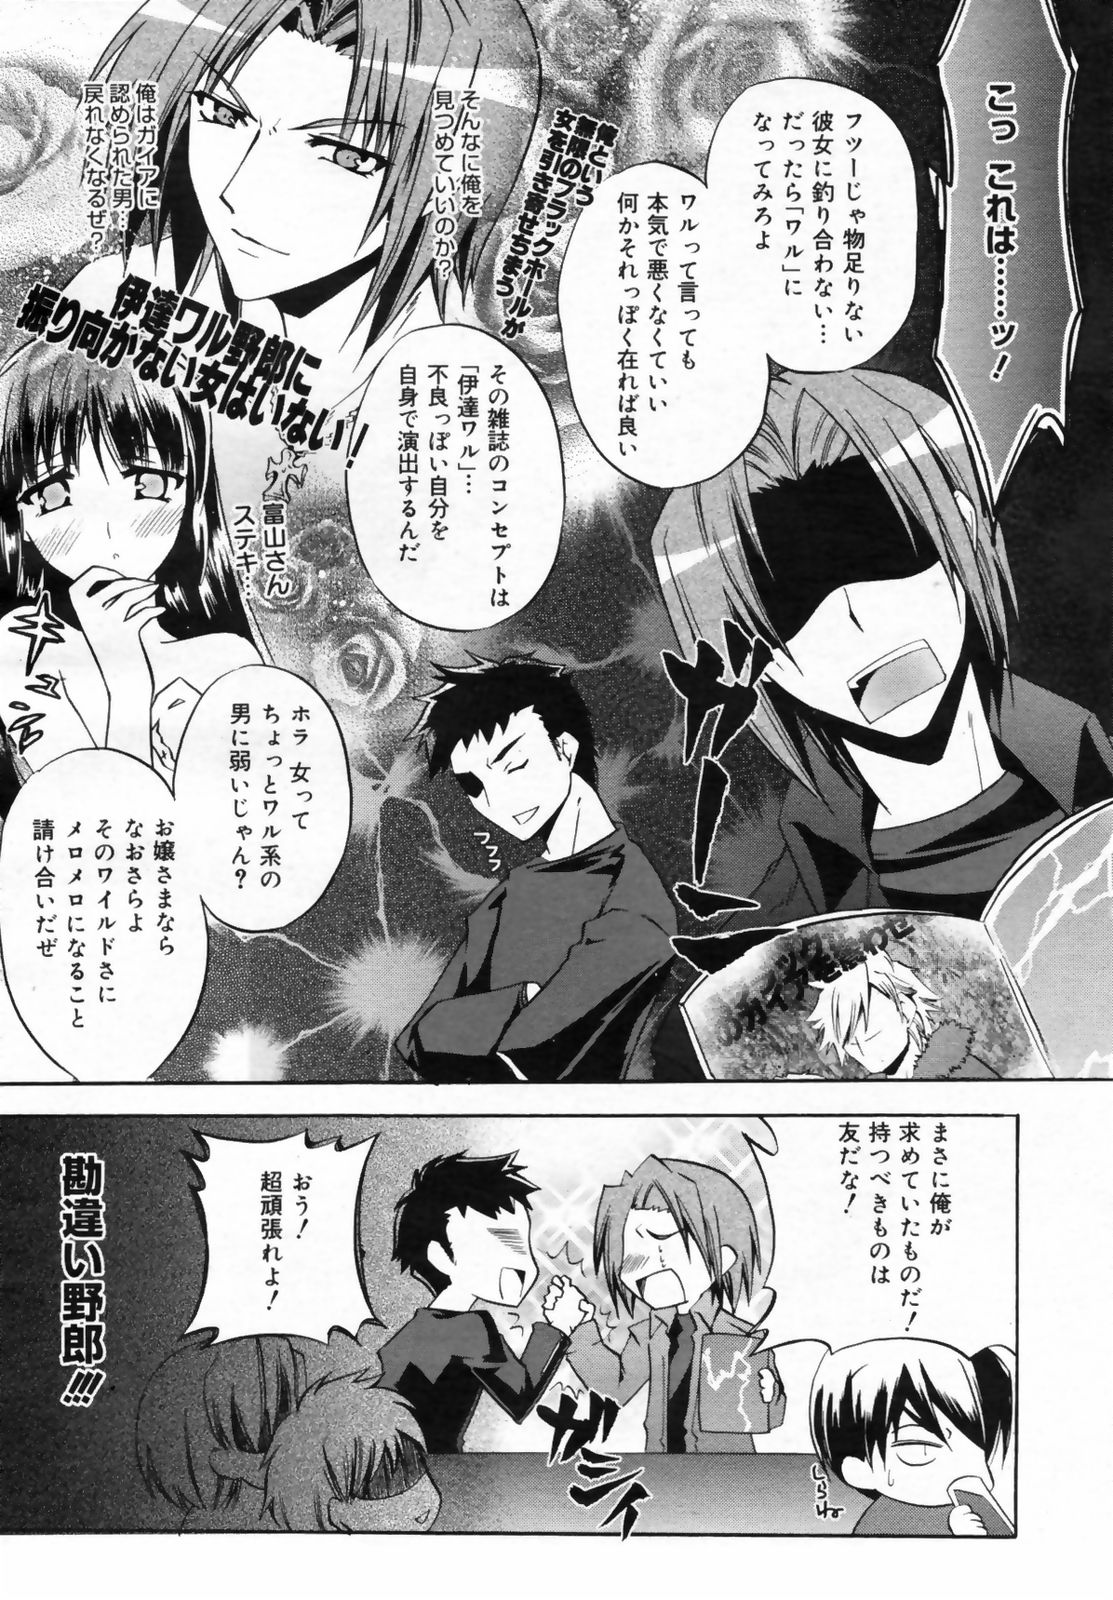 Manga Bangaichi 2009-02 Vol. 234 page 41 full